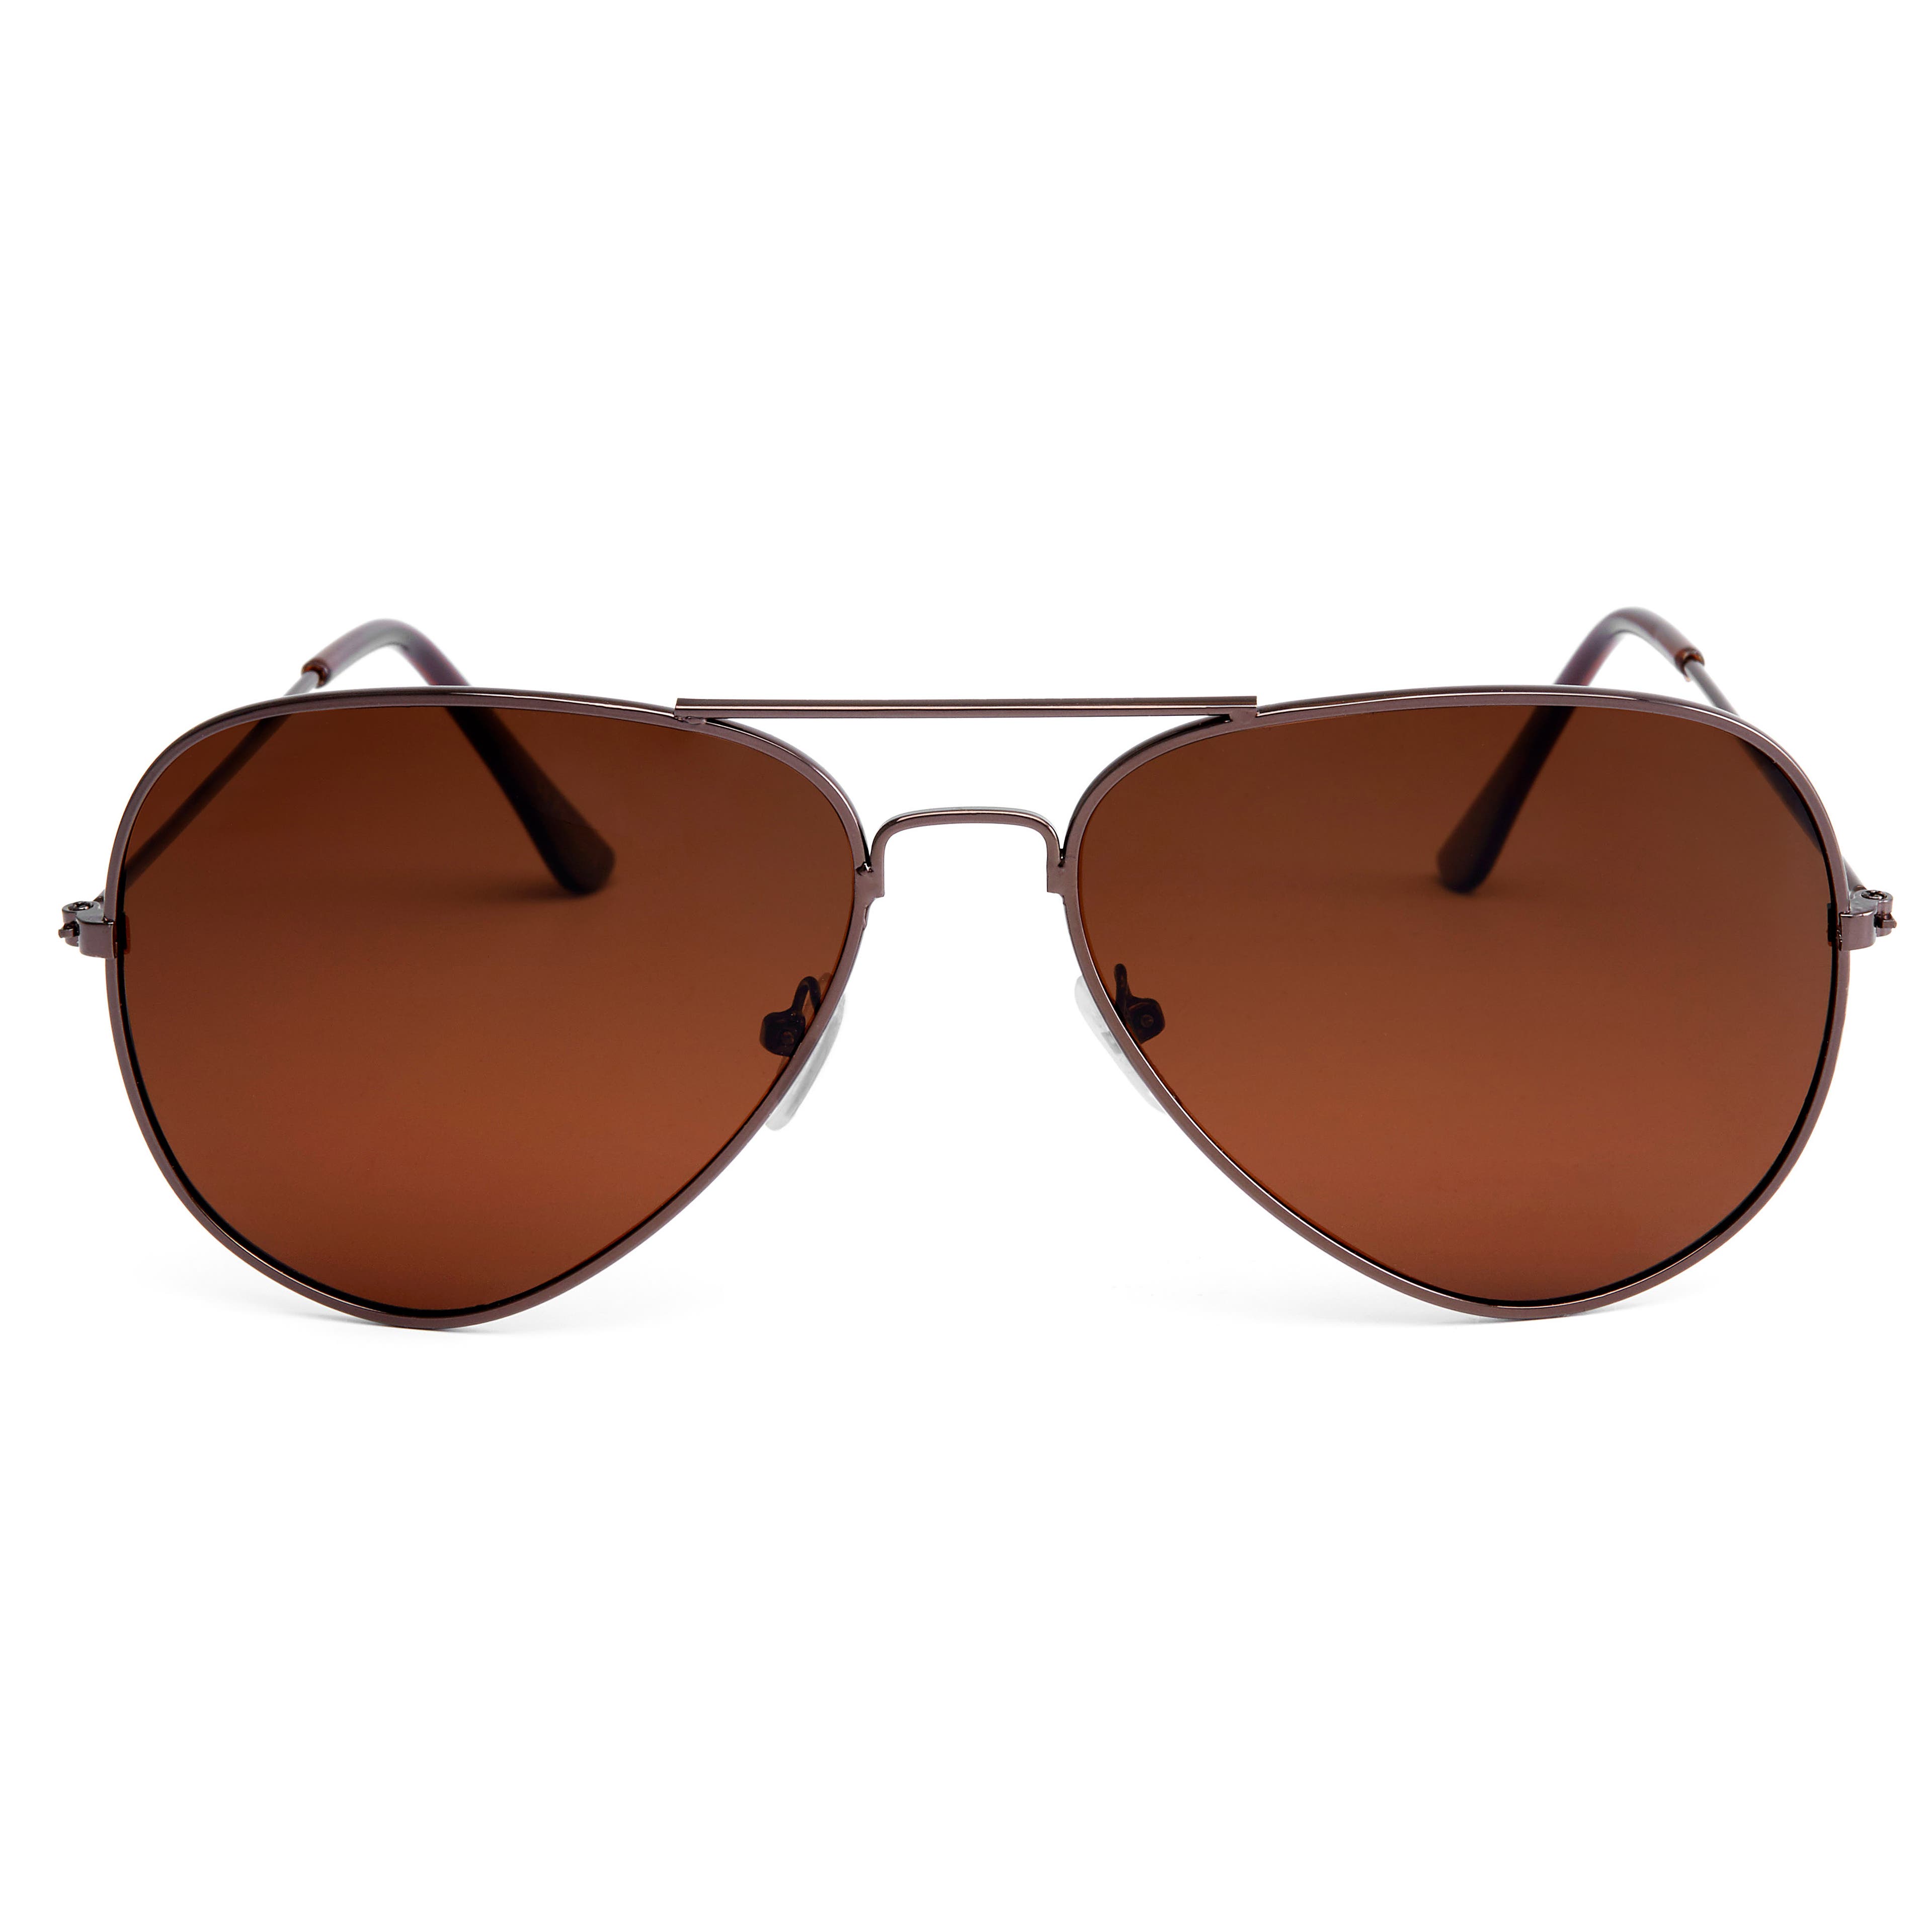 Ochelari de soare stil aviator cu lentile polarizate maro